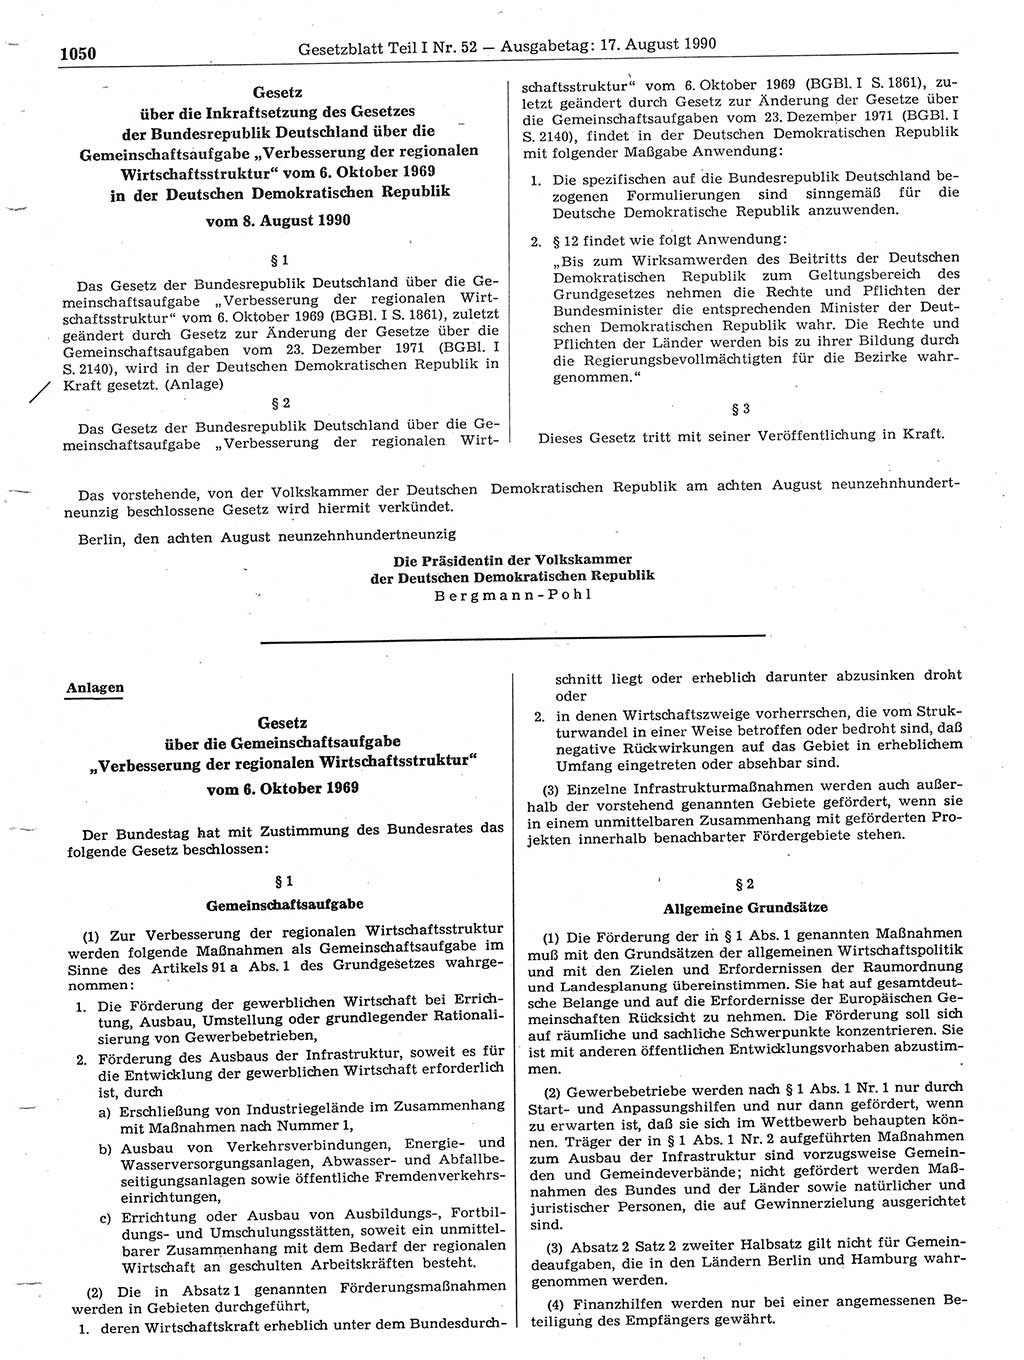 Gesetzblatt (GBl.) der Deutschen Demokratischen Republik (DDR) Teil Ⅰ 1990, Seite 1050 (GBl. DDR Ⅰ 1990, S. 1050)